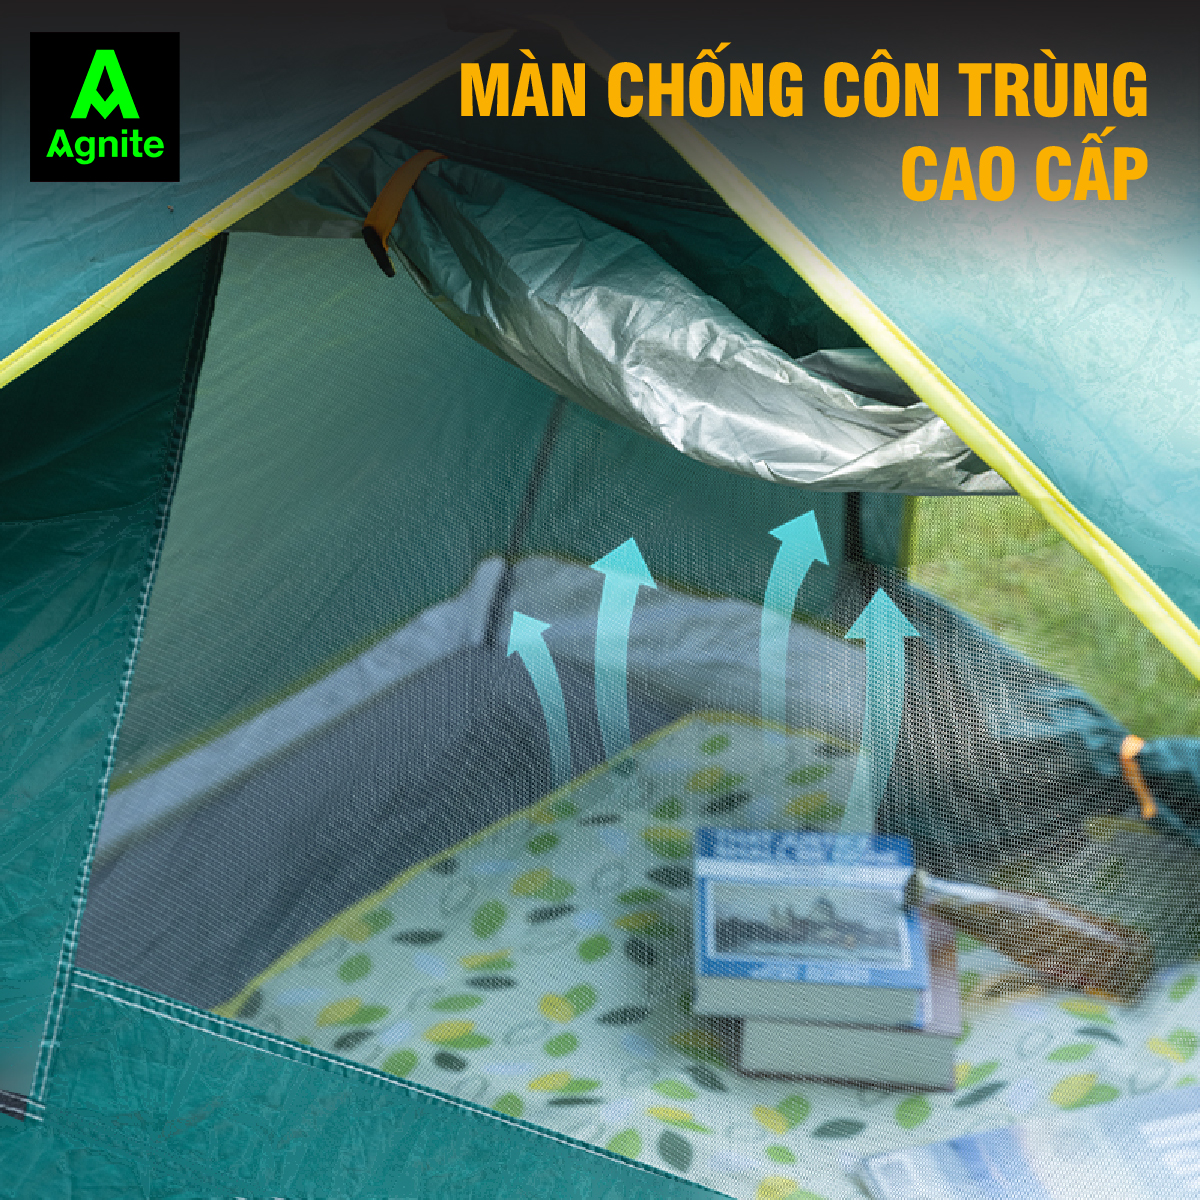 Lều cắm trại tự bung 2 cửa cao cấp Agnite dành cho 2-4 người, chống nước, ít hấp thụ nhiệt - VS4001/VS4002